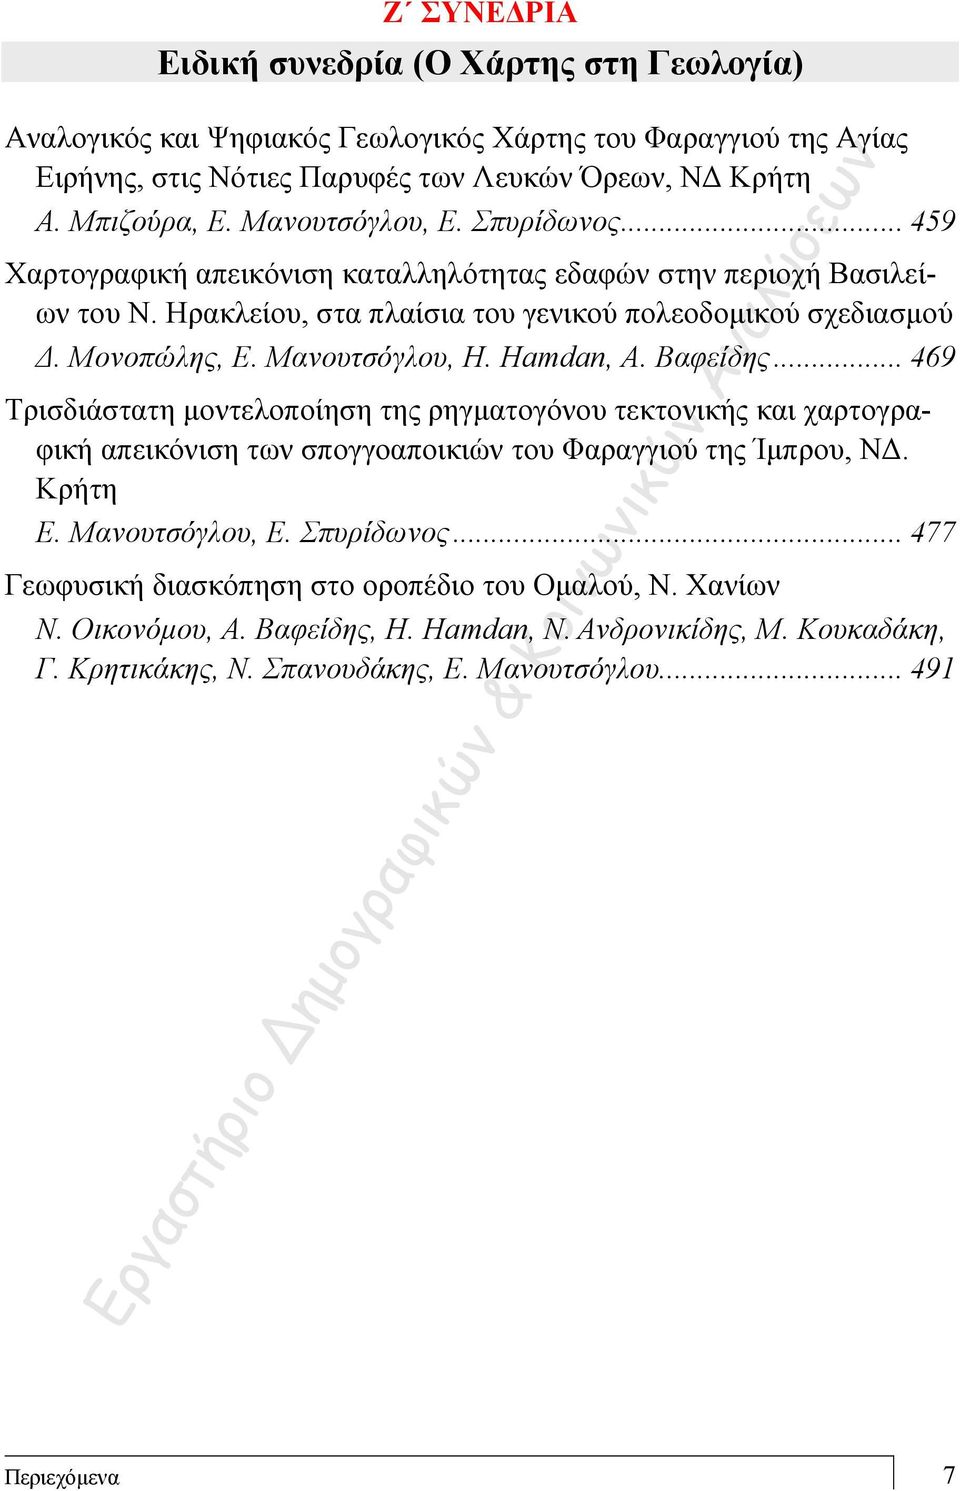 Μανουτσόγλου, H. Hamdan, Α. Βαφείδης... 469 Tρισδιάστατη μοντελοποίηση της ρηγματογόνου τεκτονικής και χαρτογραφική απεικόνιση των σπογγοαποικιών του Φαραγγιού της Ίμπρου, ΝΔ. Κρήτη Ε.